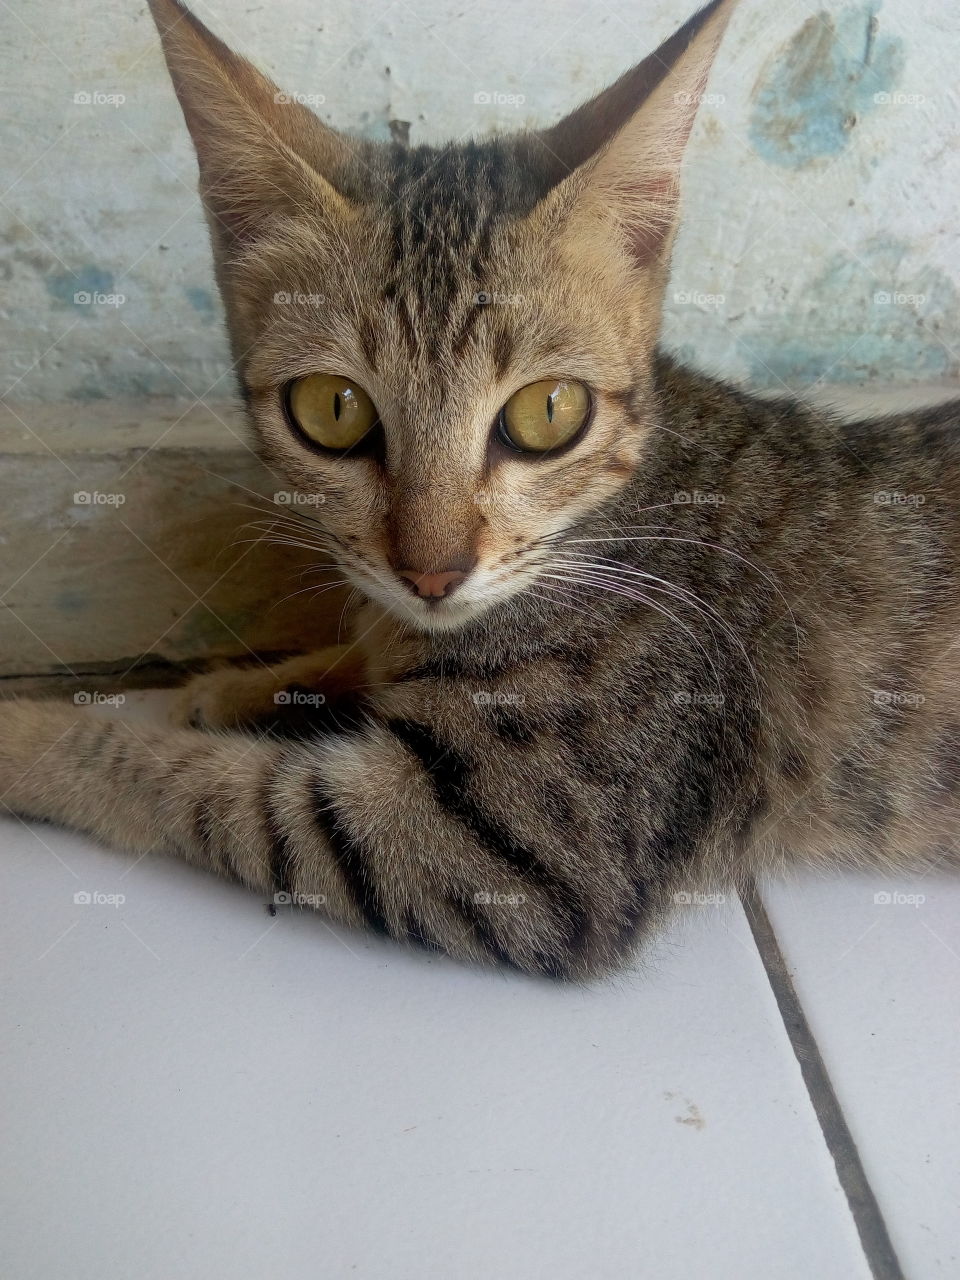 My catty2